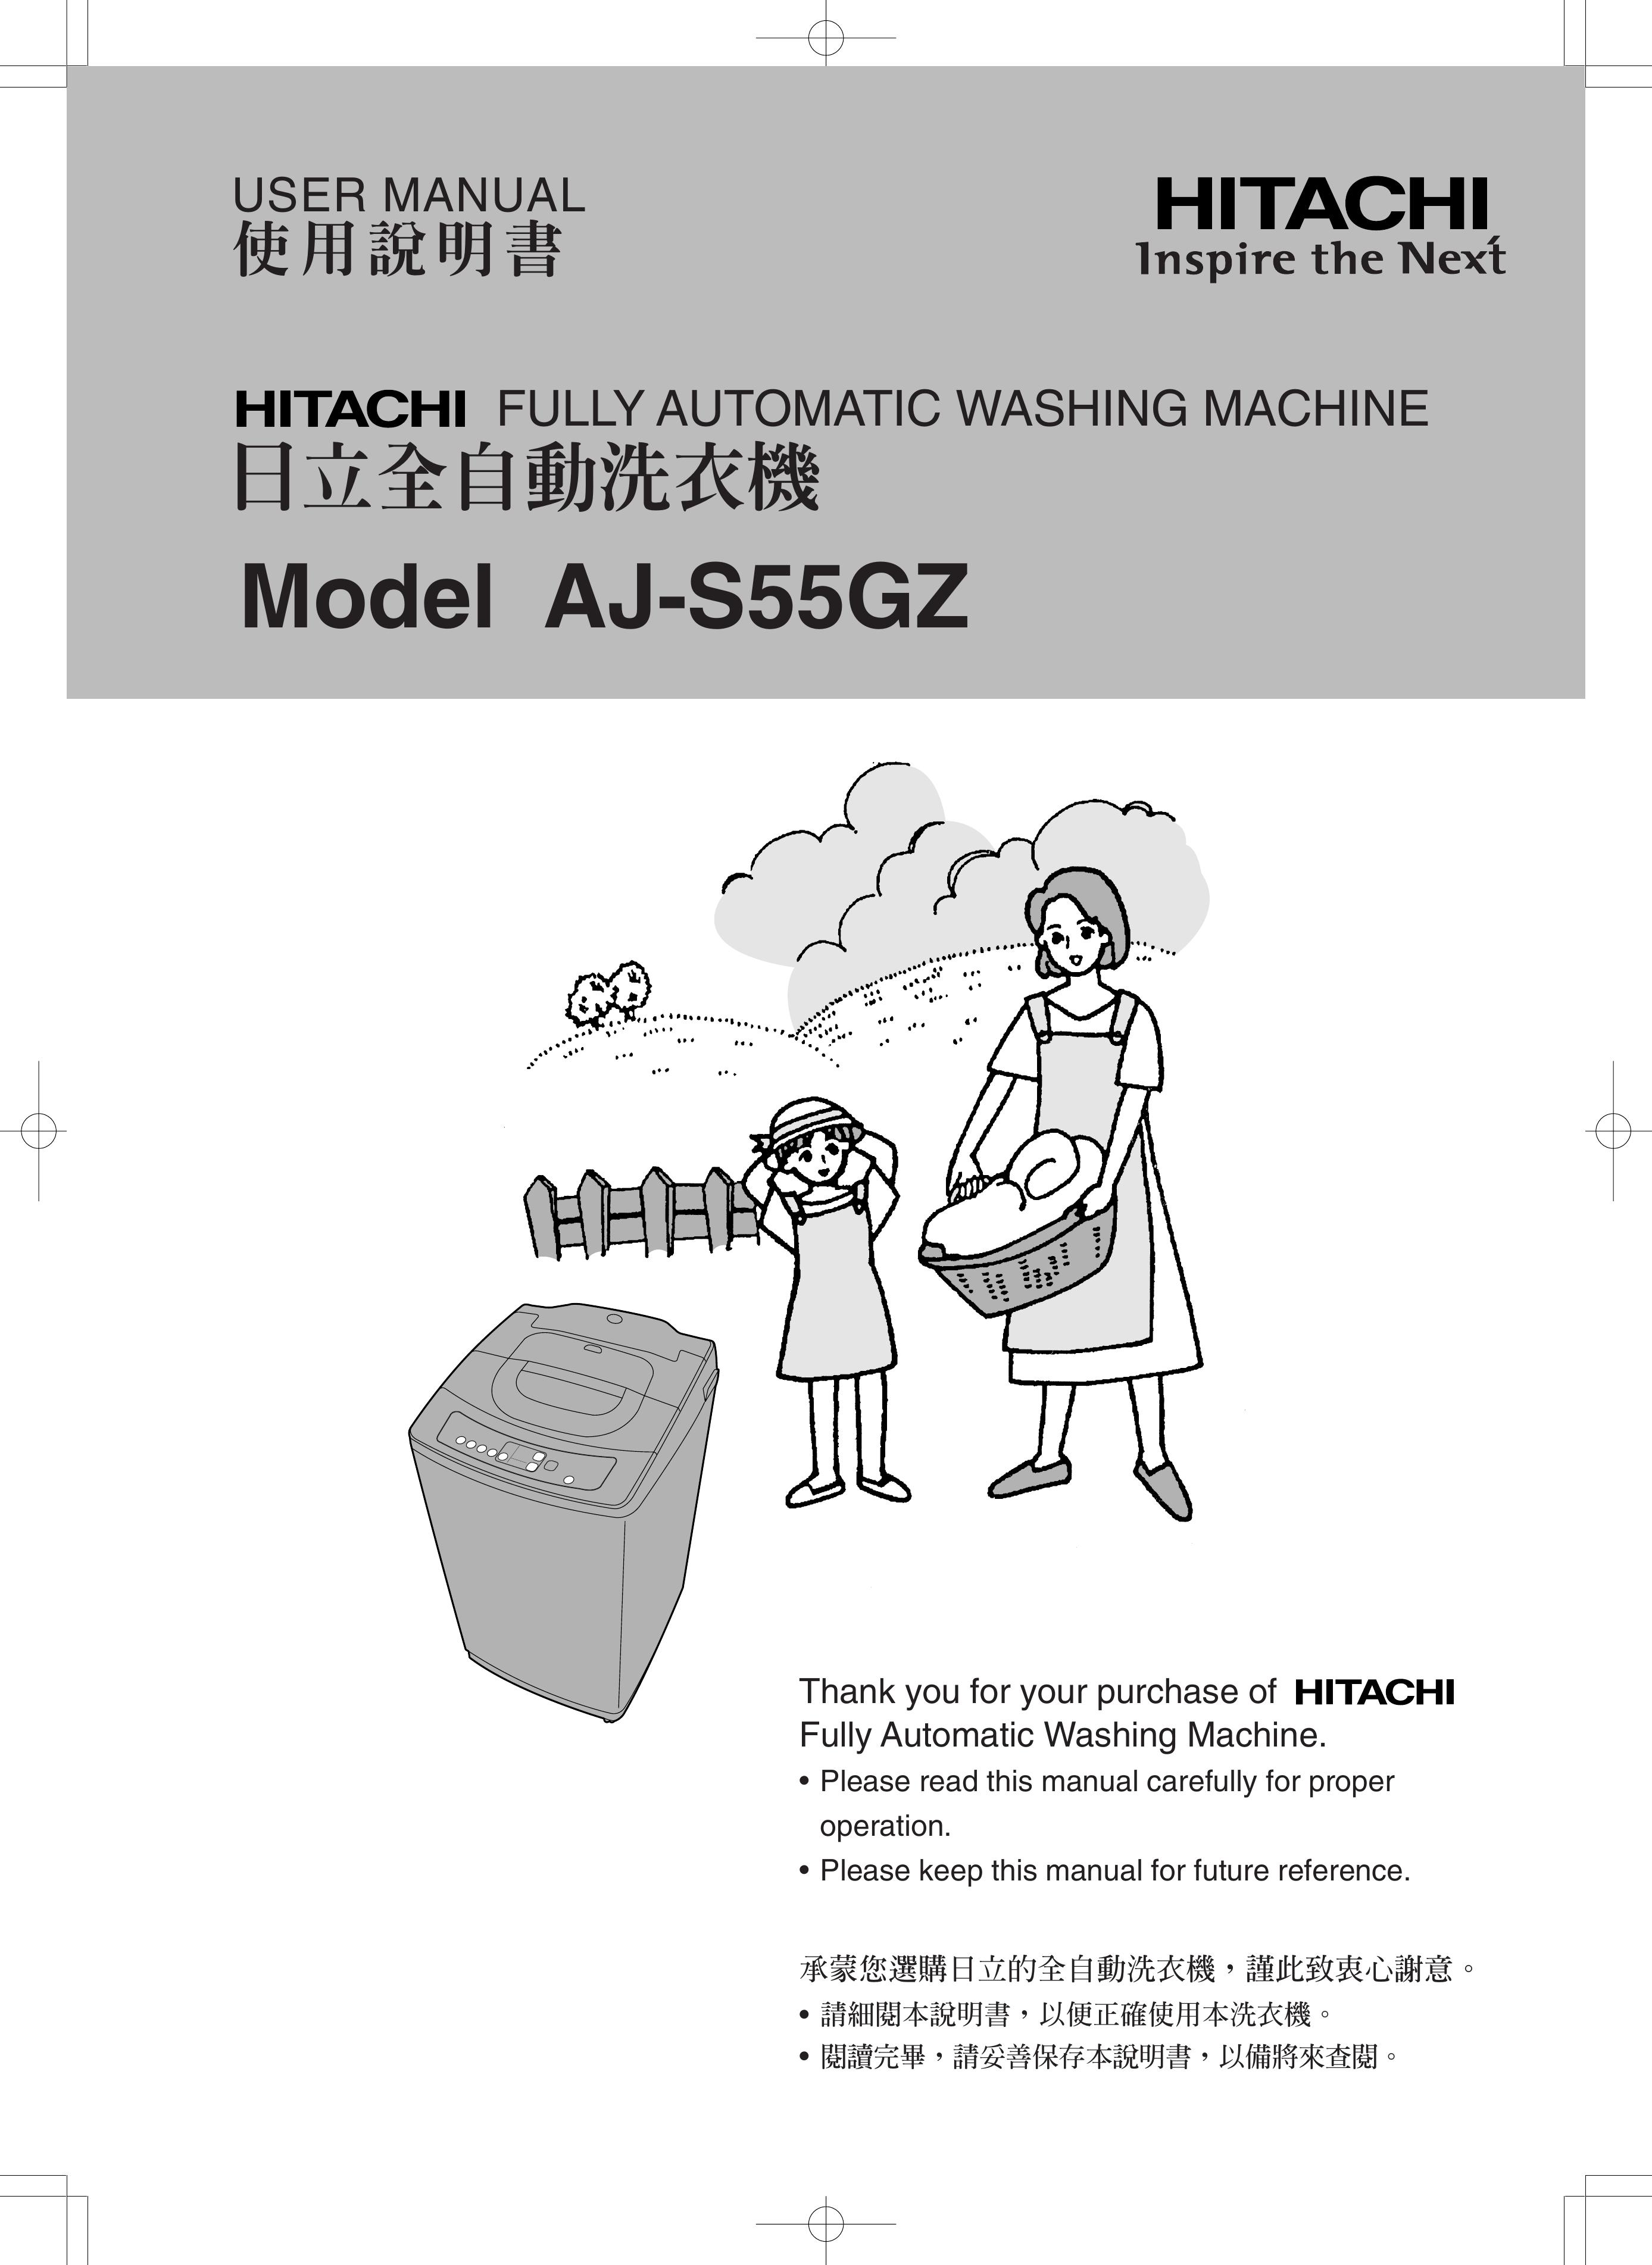 Hitachi AJ-S55GZ Washer User Manual